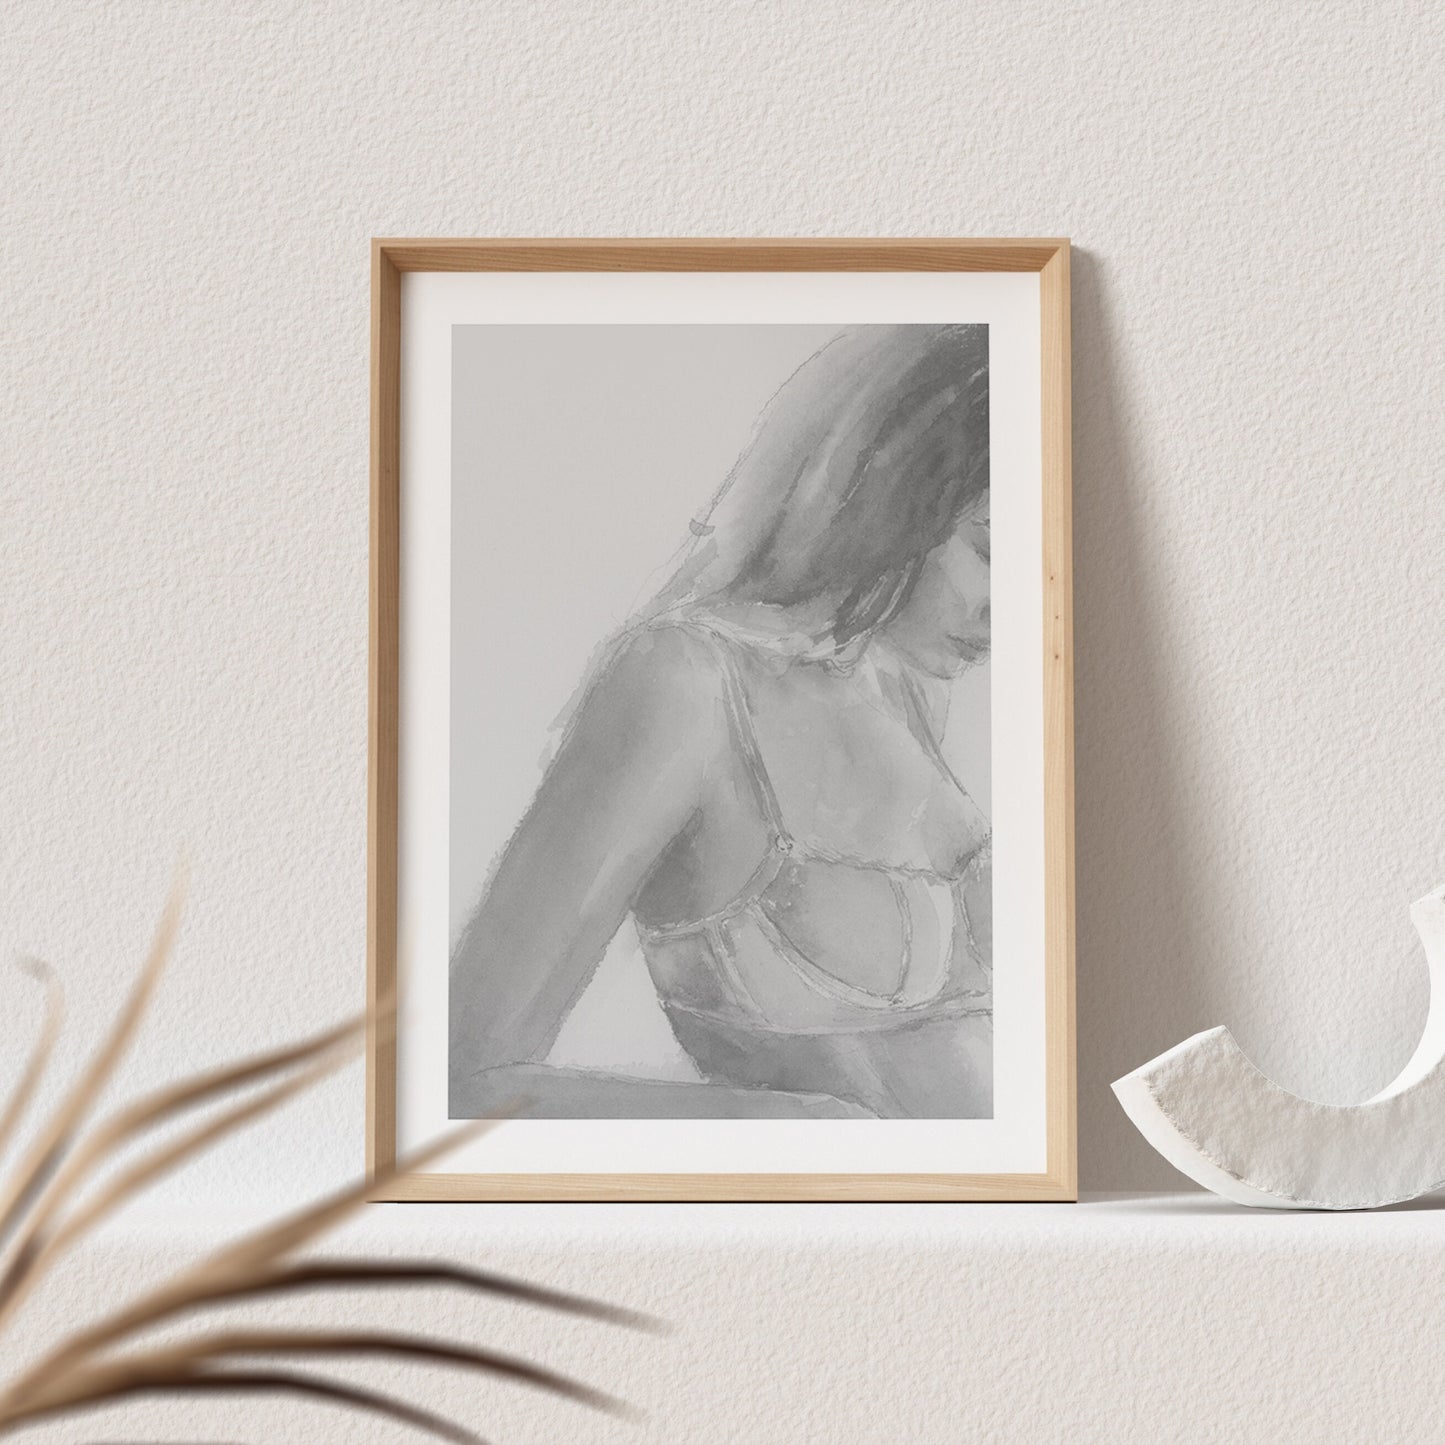 Frau in Unterwäsche Bild Aquarell Kunstdruck Poster Sinnliche Frau Erotisches Wandbild Wanddeko Schlafzimmer Print